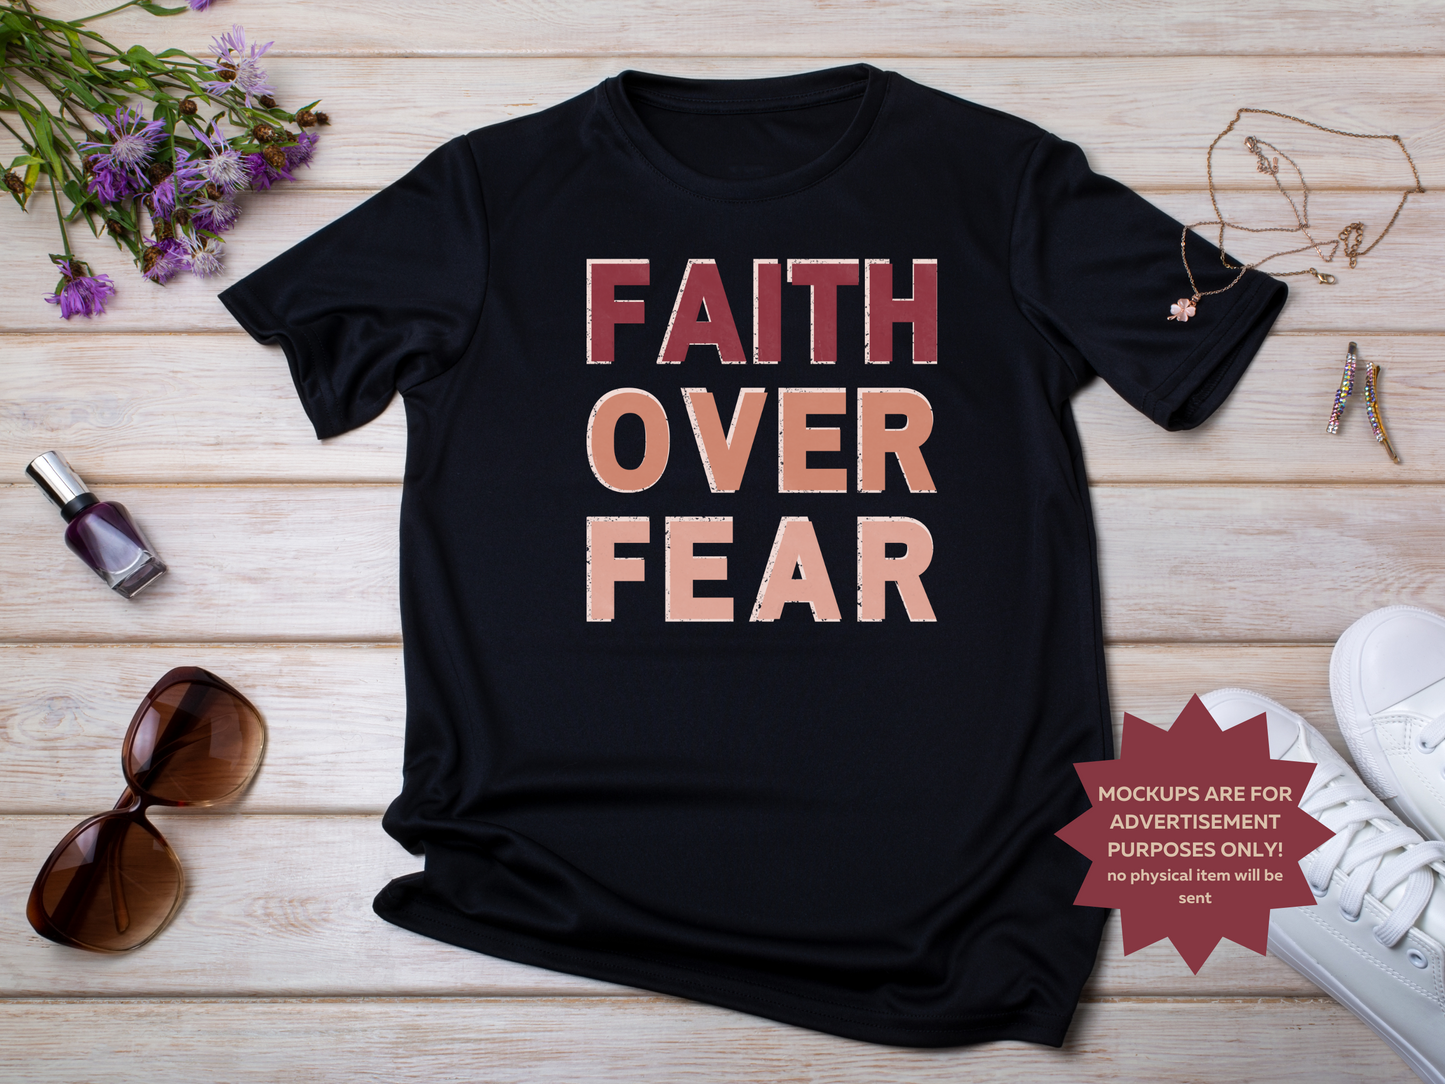 Faith Over Fear SVG PNG